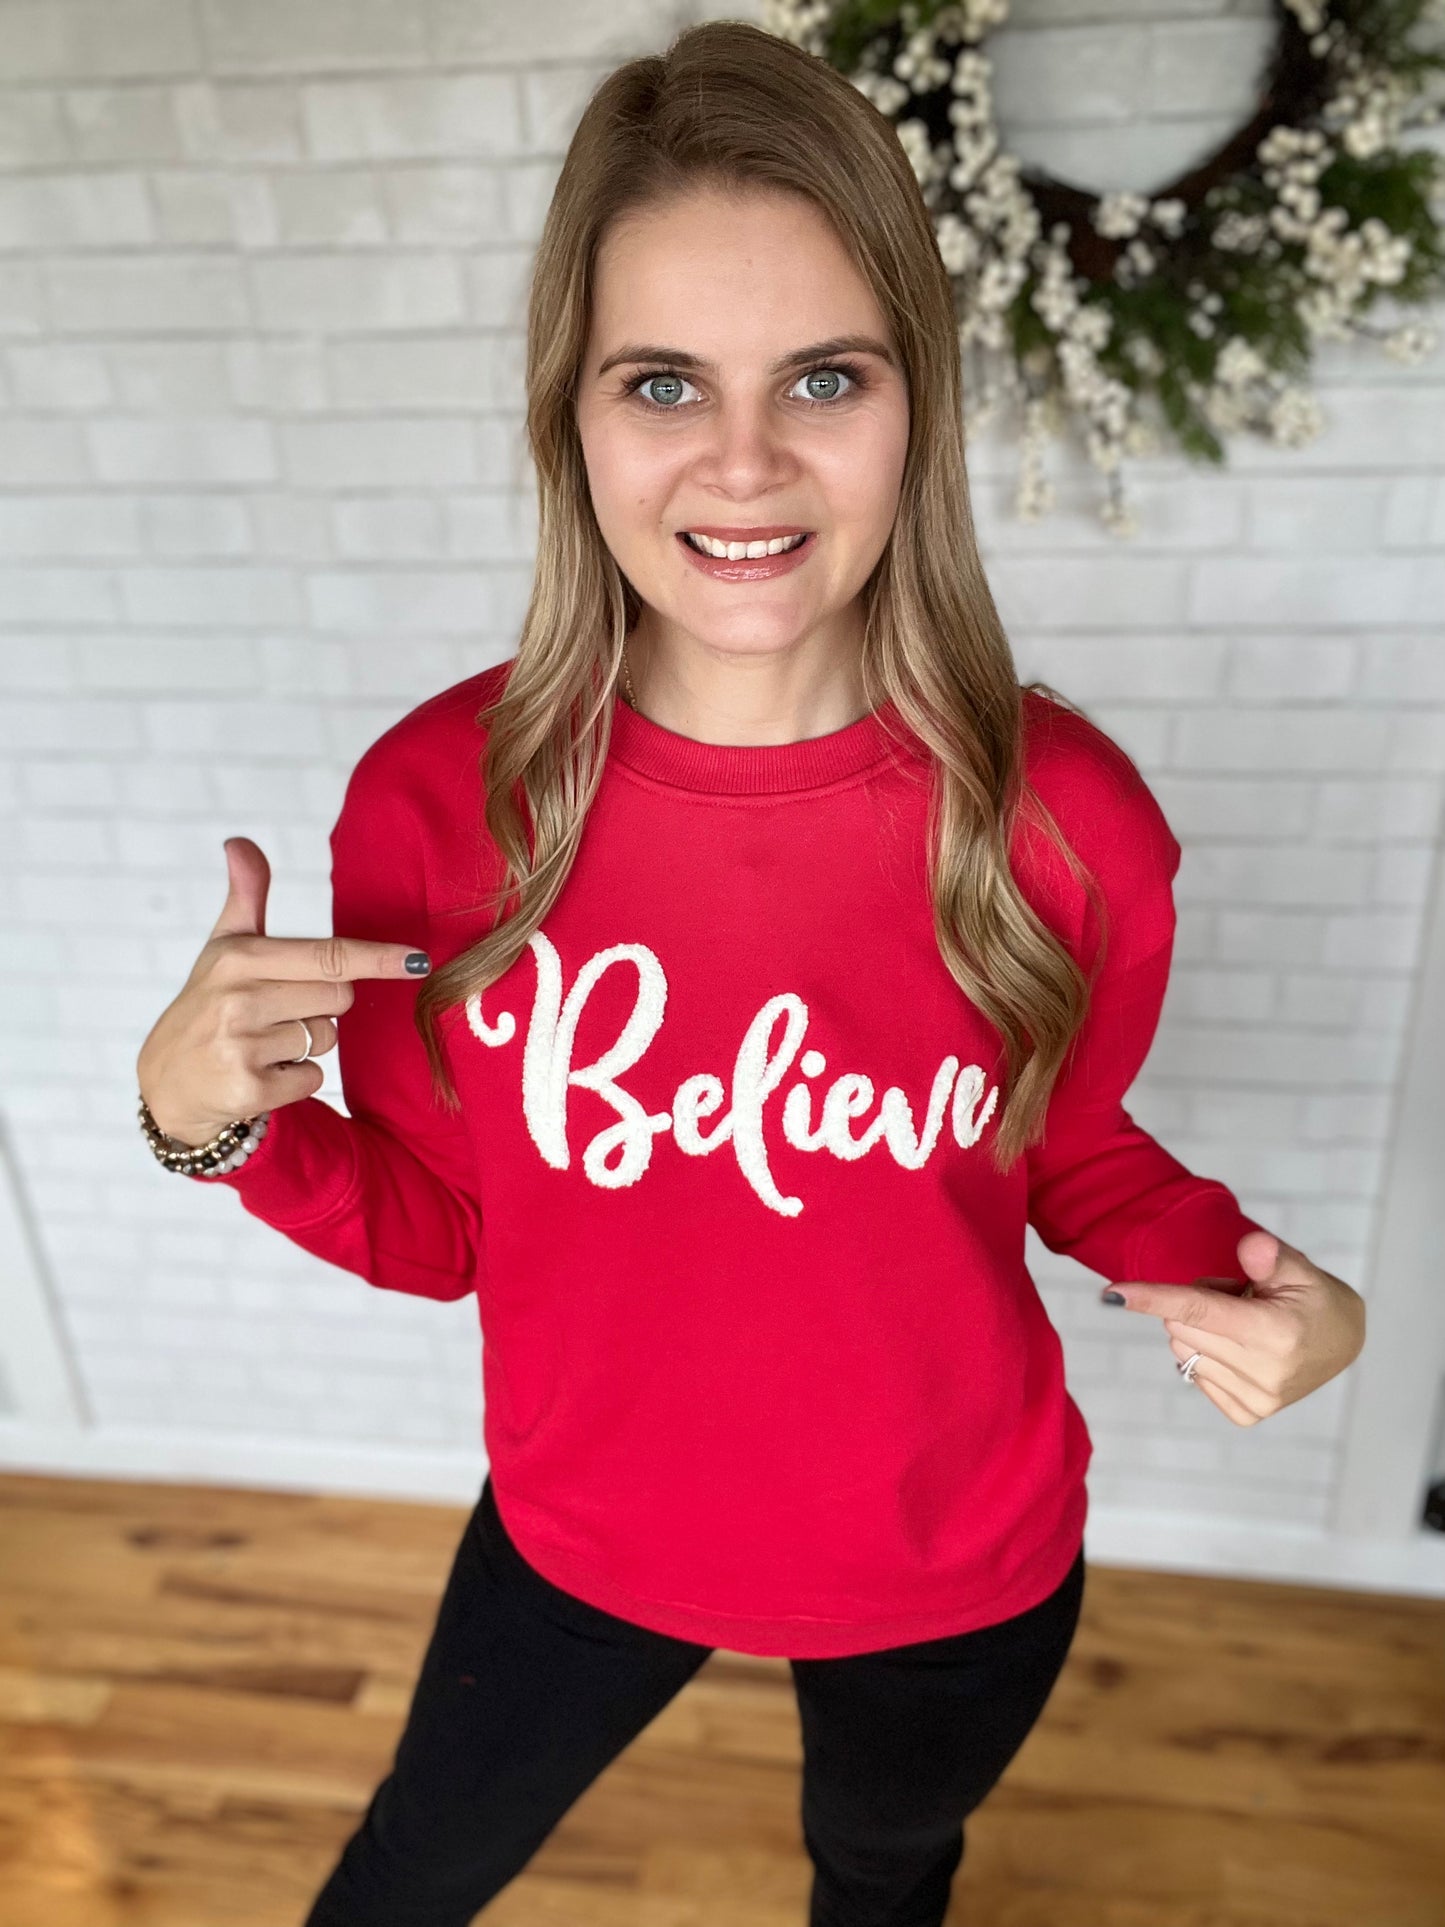 Believe Sweatshirt